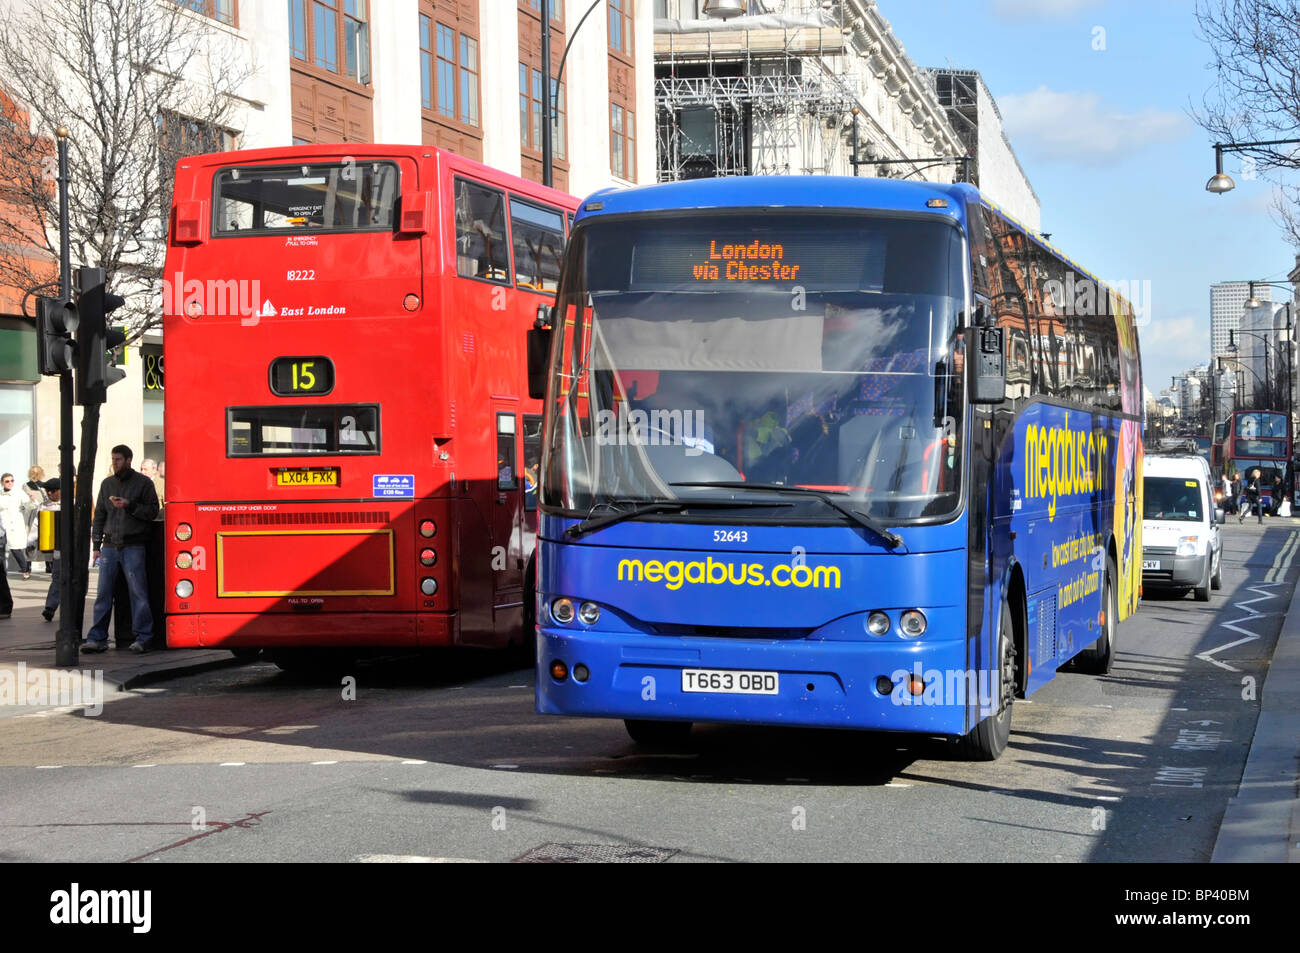 Öffentliche Verkehrsmittel Vorderansicht Fernbus Megabus Ankunft in London vorbei Rückansicht der lokalen roten Doppeldecker Route 15 Oxford Street UK Stockfoto